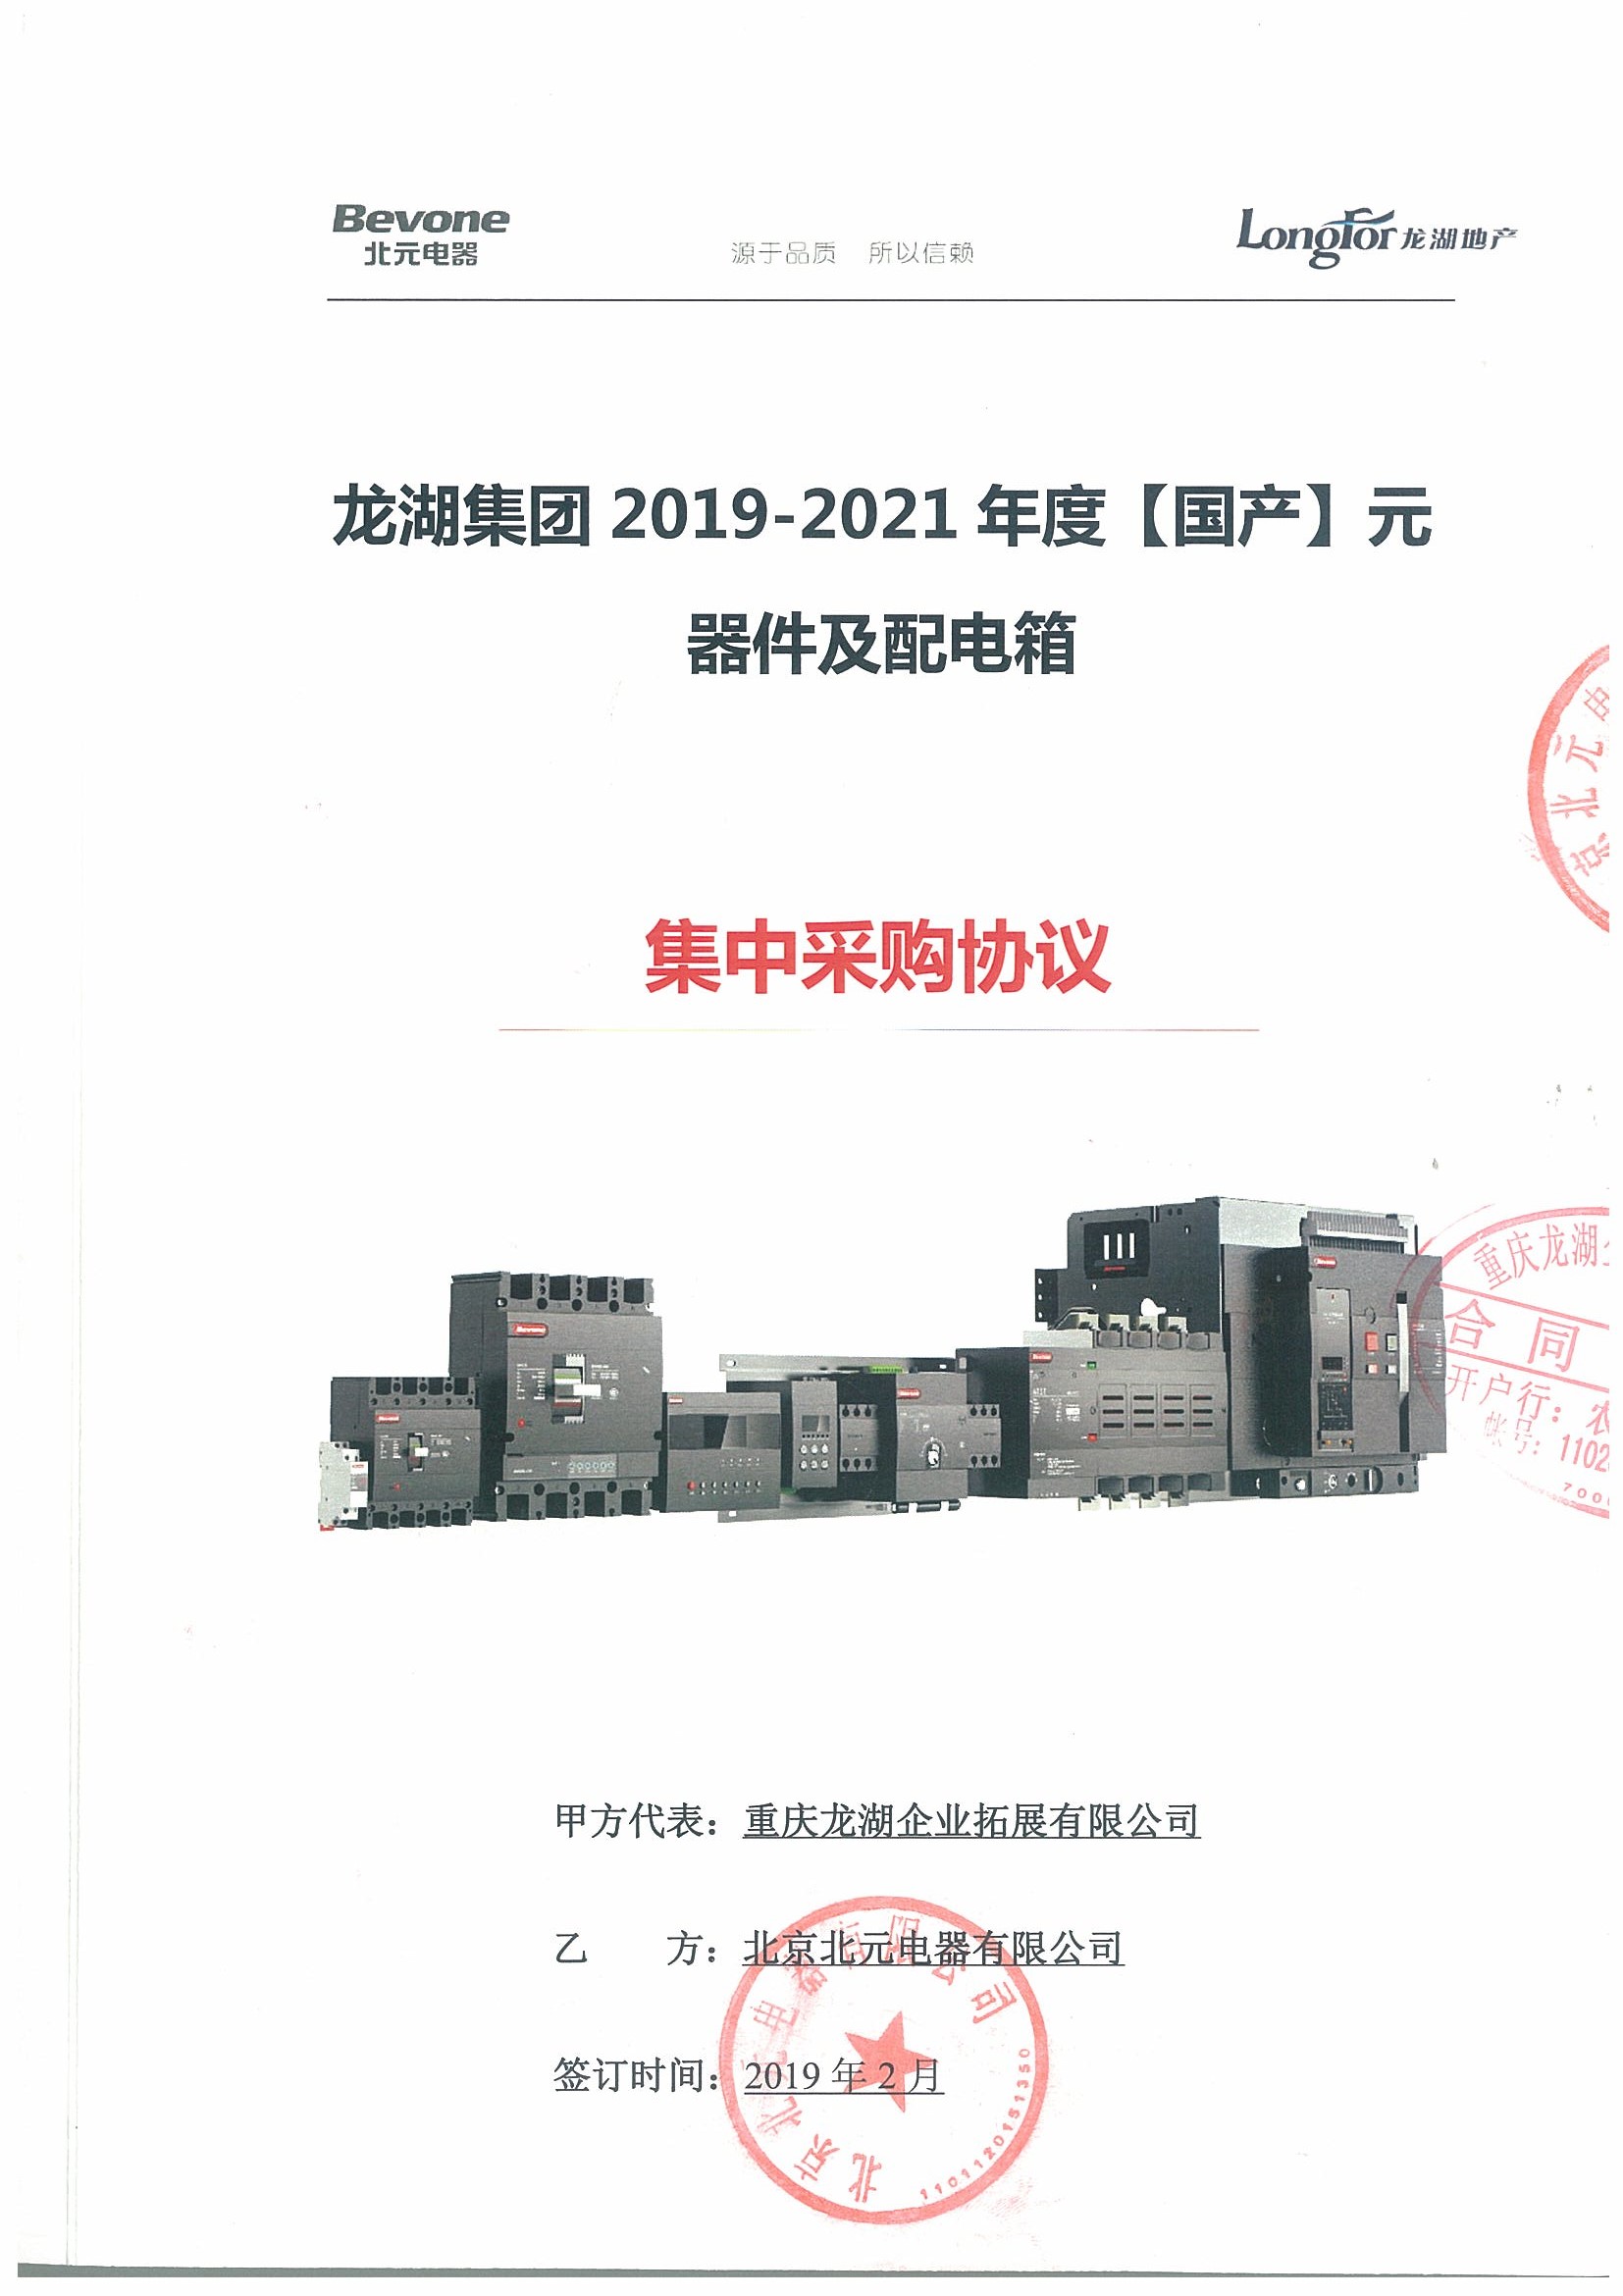 重庆龙湖企业拓展有限公司2019-2021战略合作协议